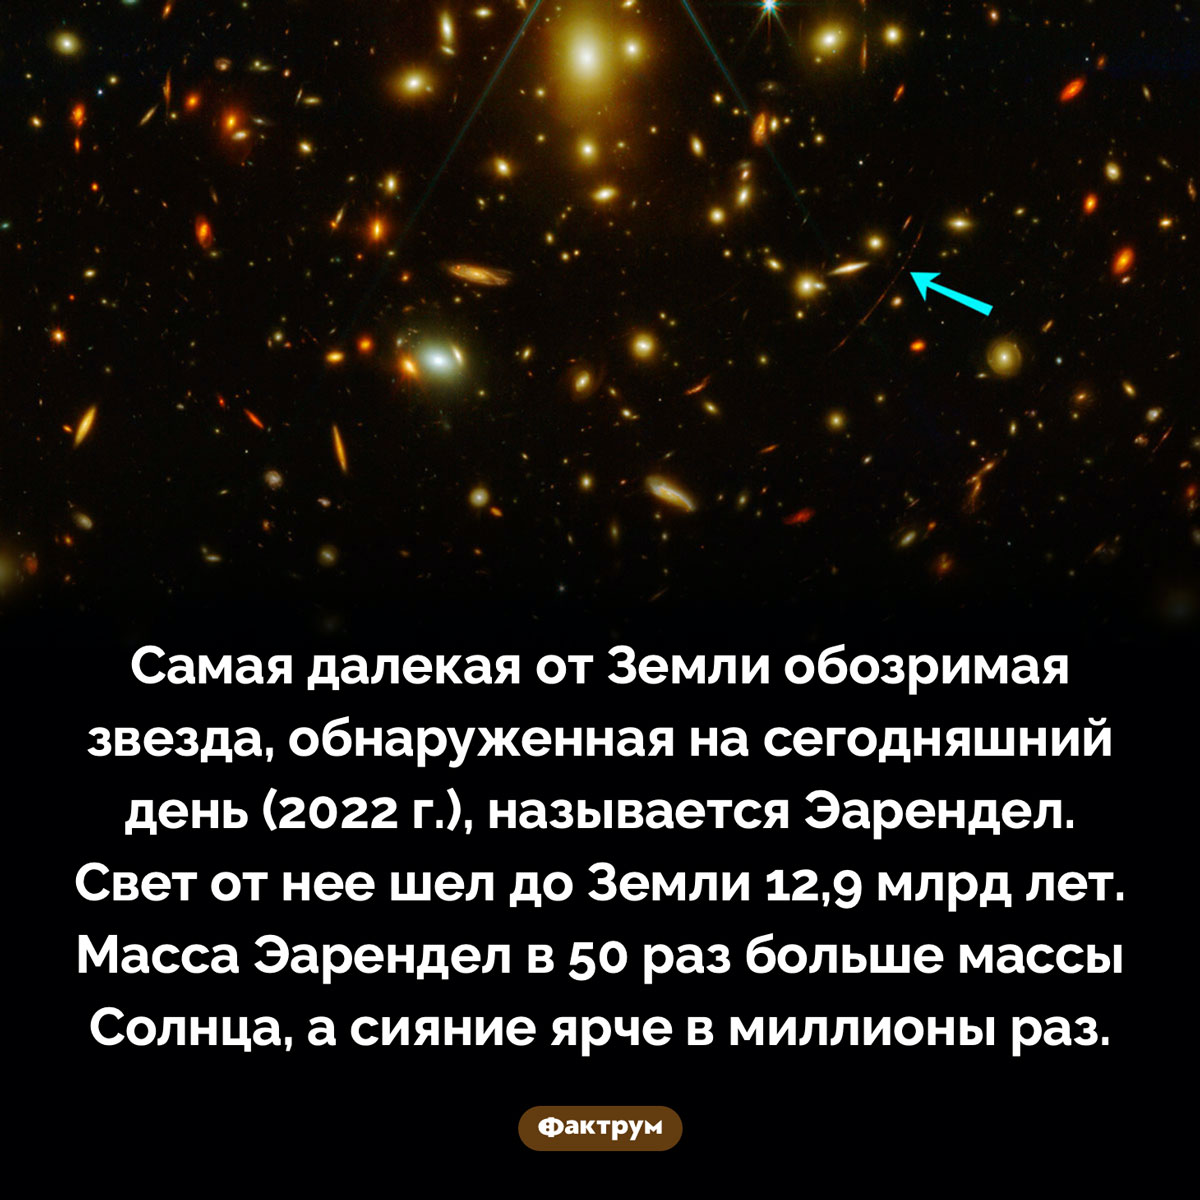 Самая далекая звезда. Самая далекая от Земли обозримая звезда, обнаруженная на сегодняшний день (2022 г.), называется Эарендел. Свет от нее шел до Земли 12,9 млрд лет. Масса Эарендел в 50 раз больше массы Солнца, а сияние ярче в миллионы раз.